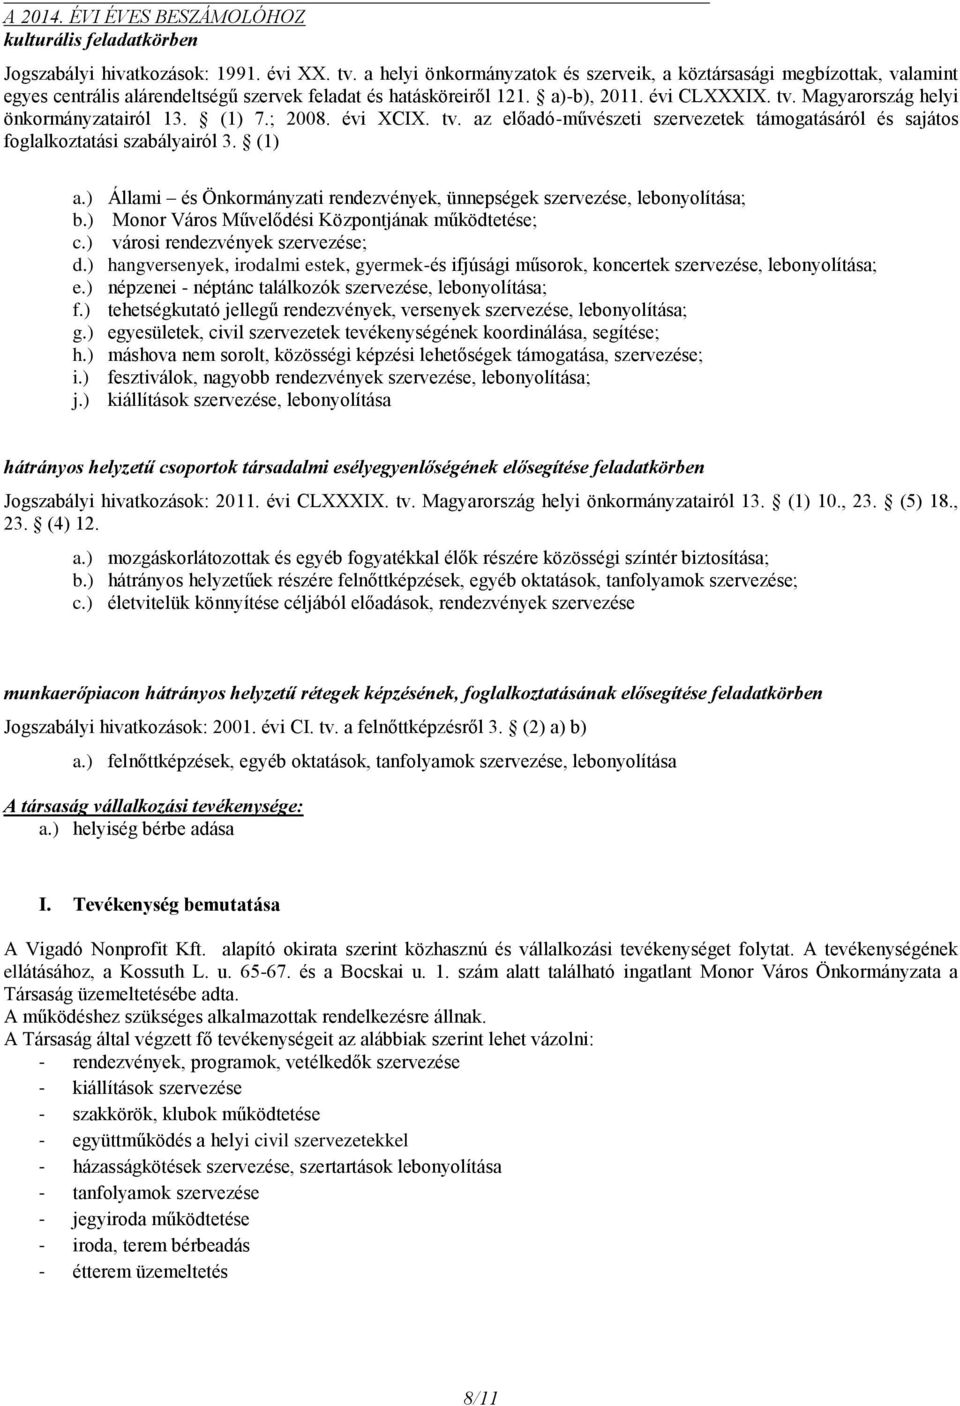 Magyarország helyi önkormányzatairól 13. (1) 7.; 2008. évi XCIX. tv. az előadó-művészeti szervezetek támogatásáról és sajátos foglalkoztatási szabályairól 3. (1) a.